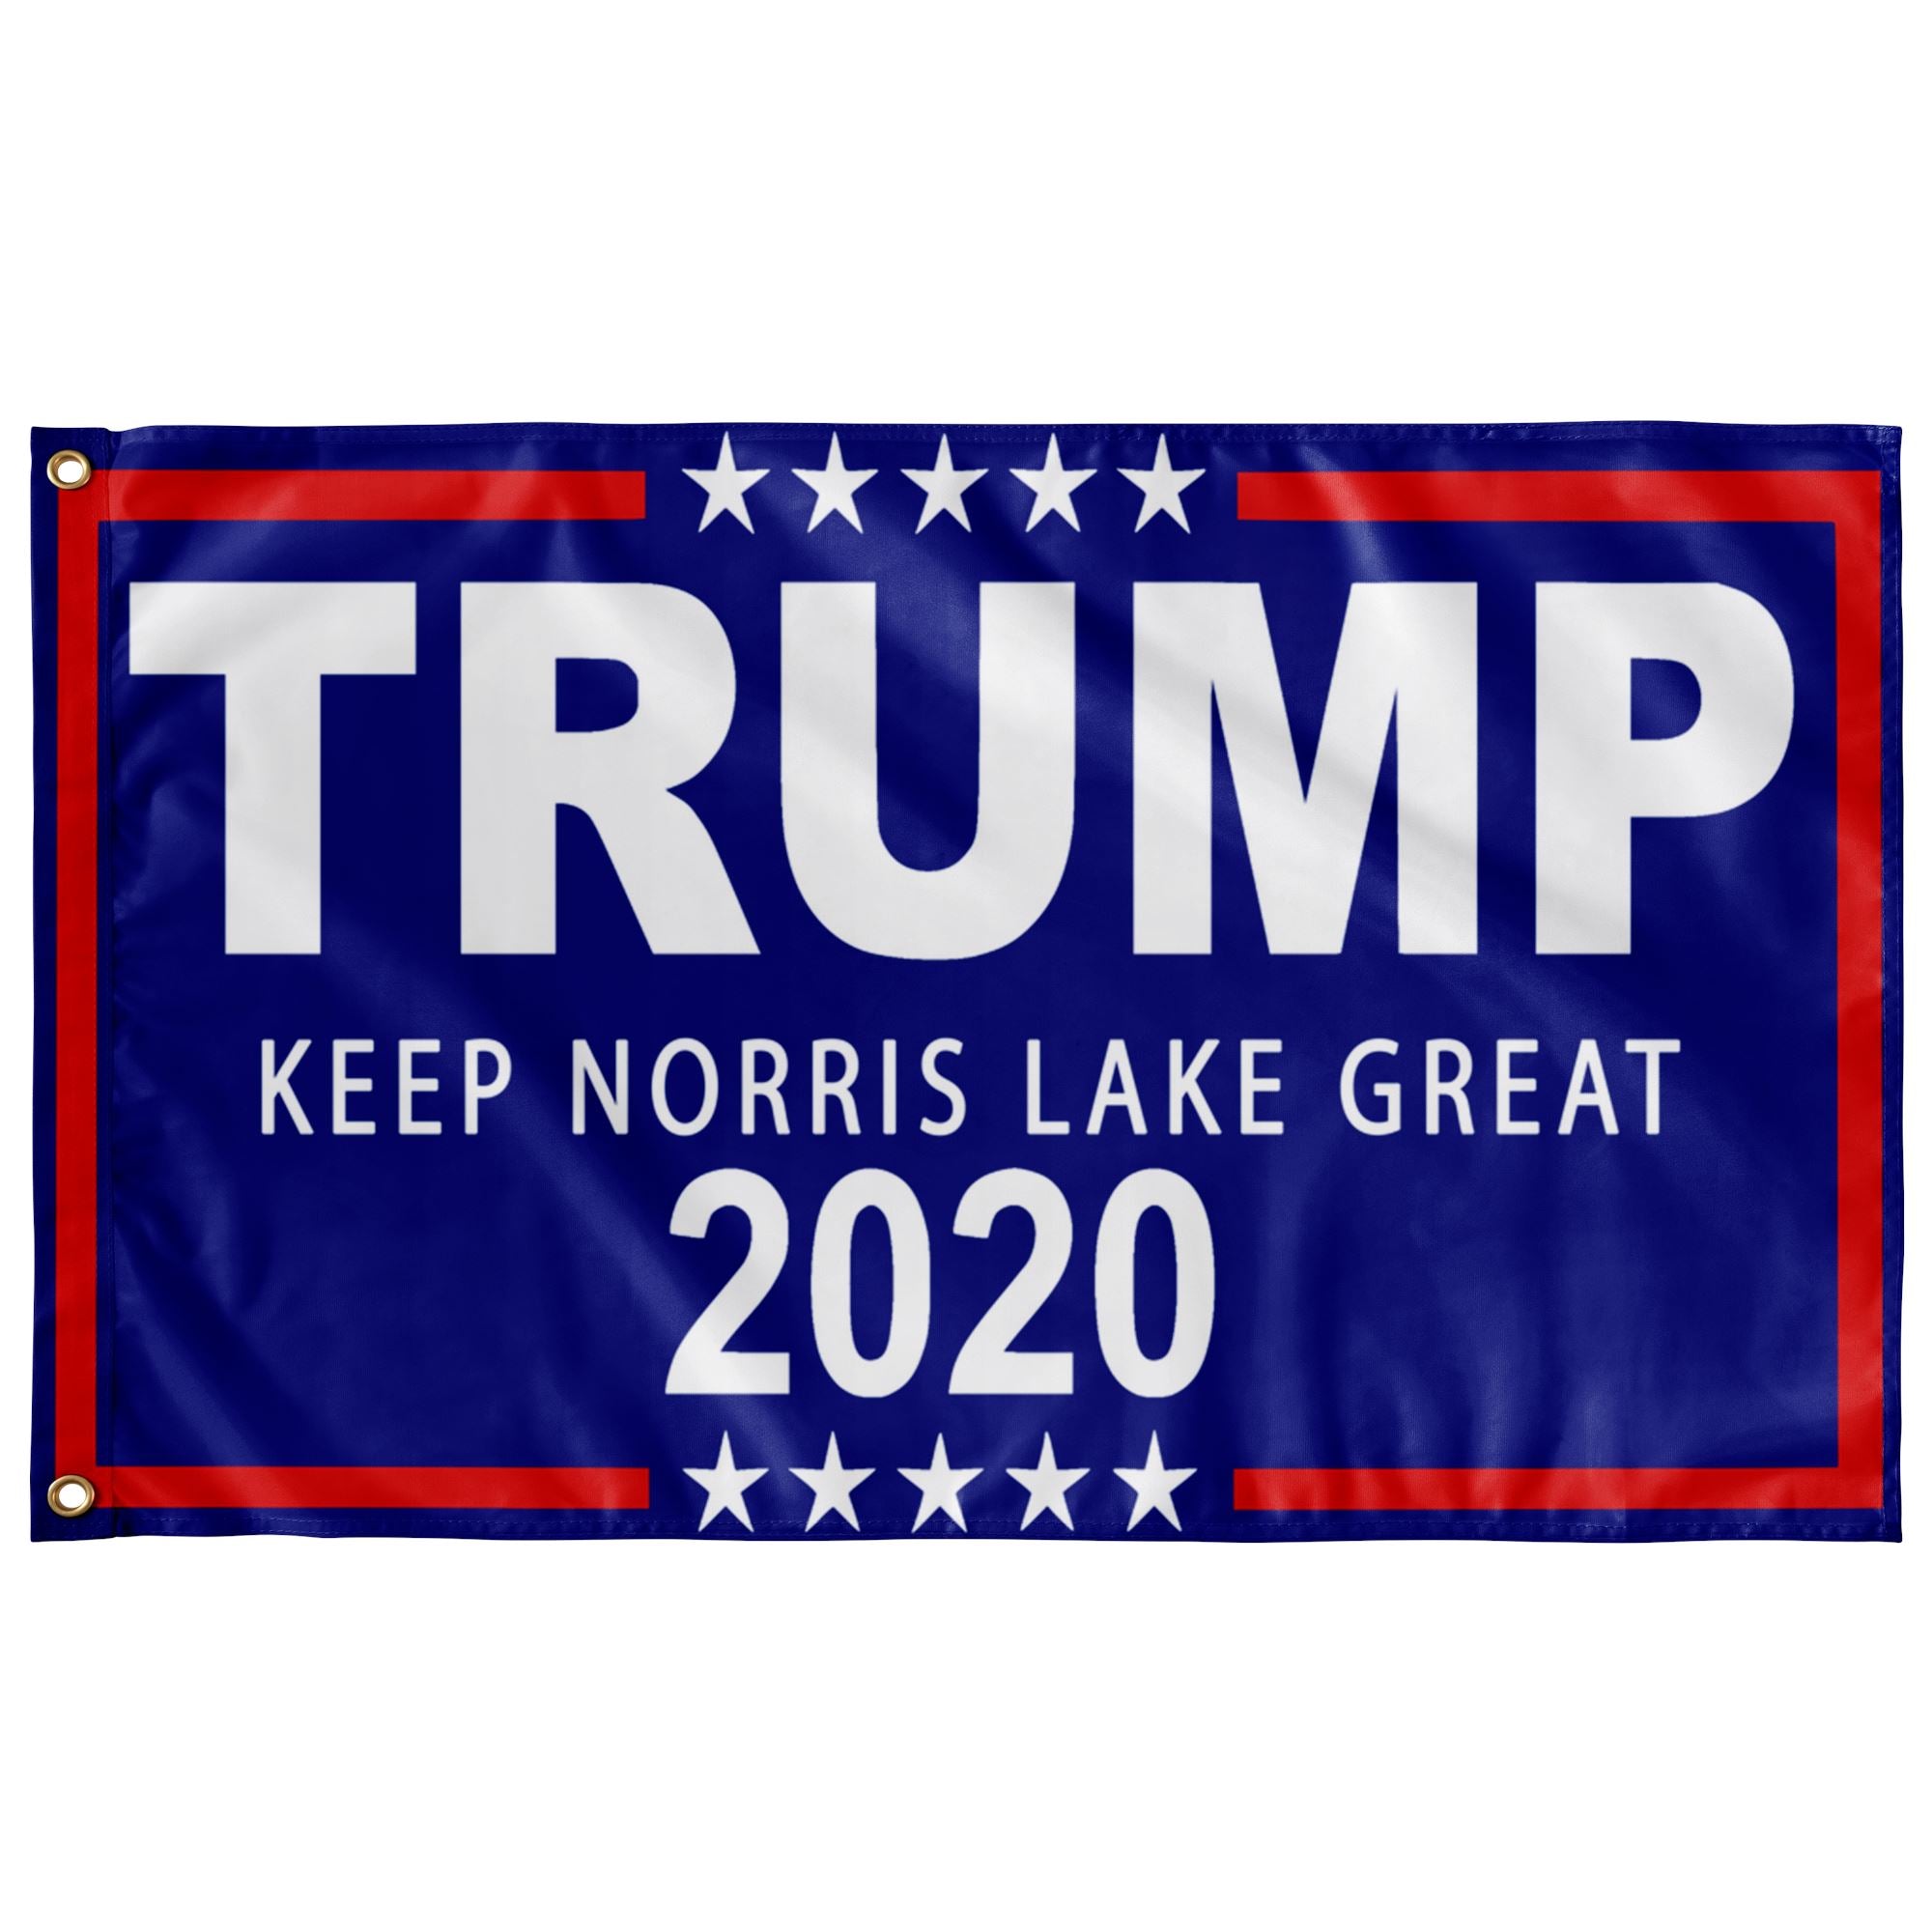 Trump Boat Flags - Keep Norris Lake Great - Houseboat Kings